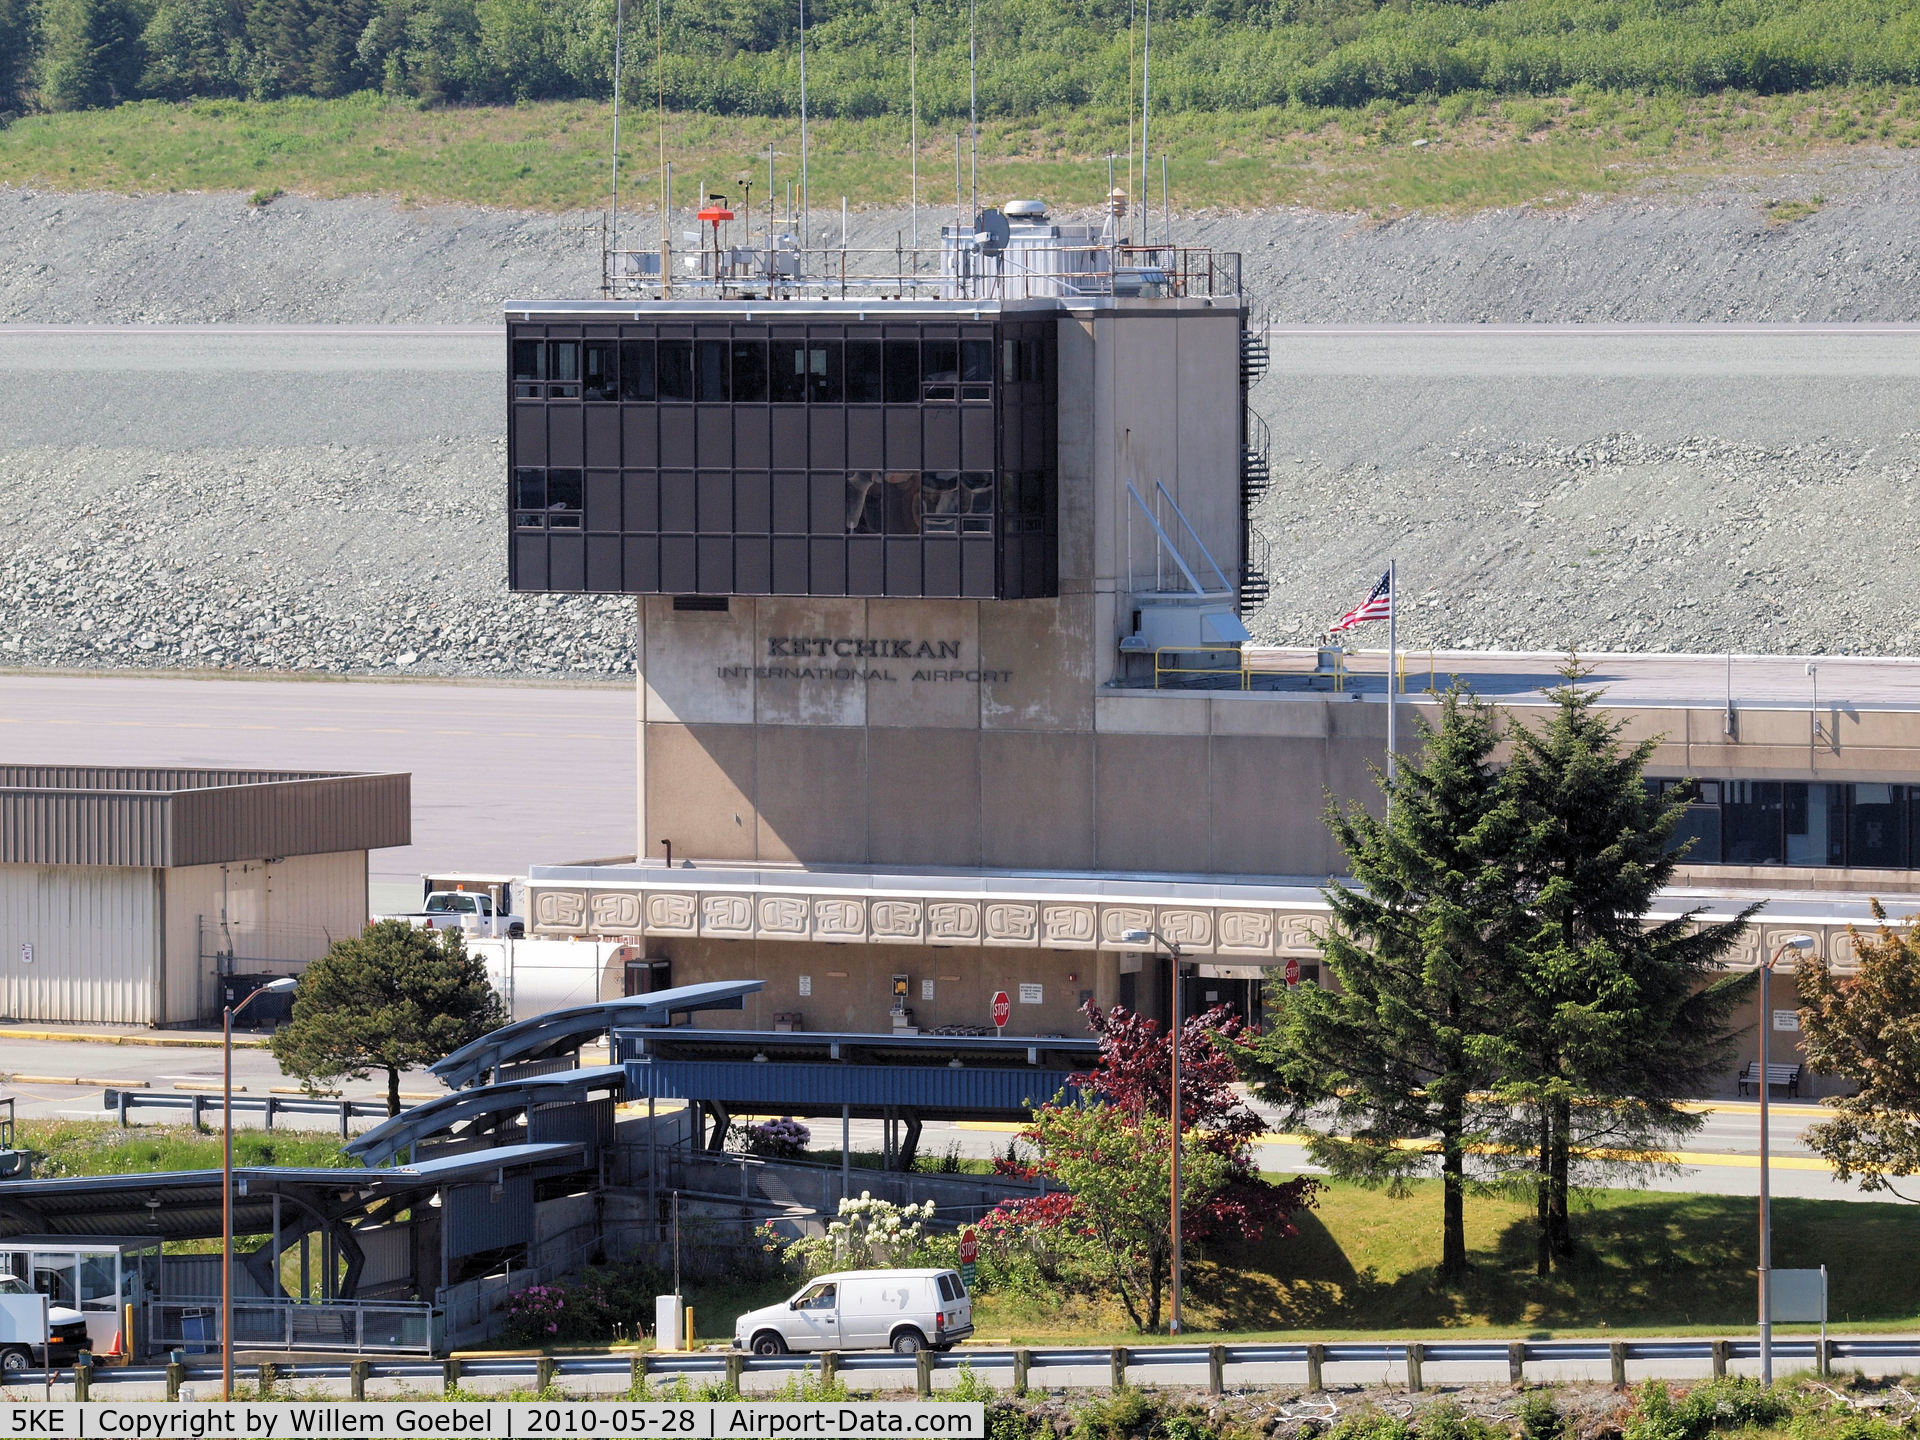 Ketchikan Harbor Seaplane Base (5KE) - Ketchikan Airport Control tower